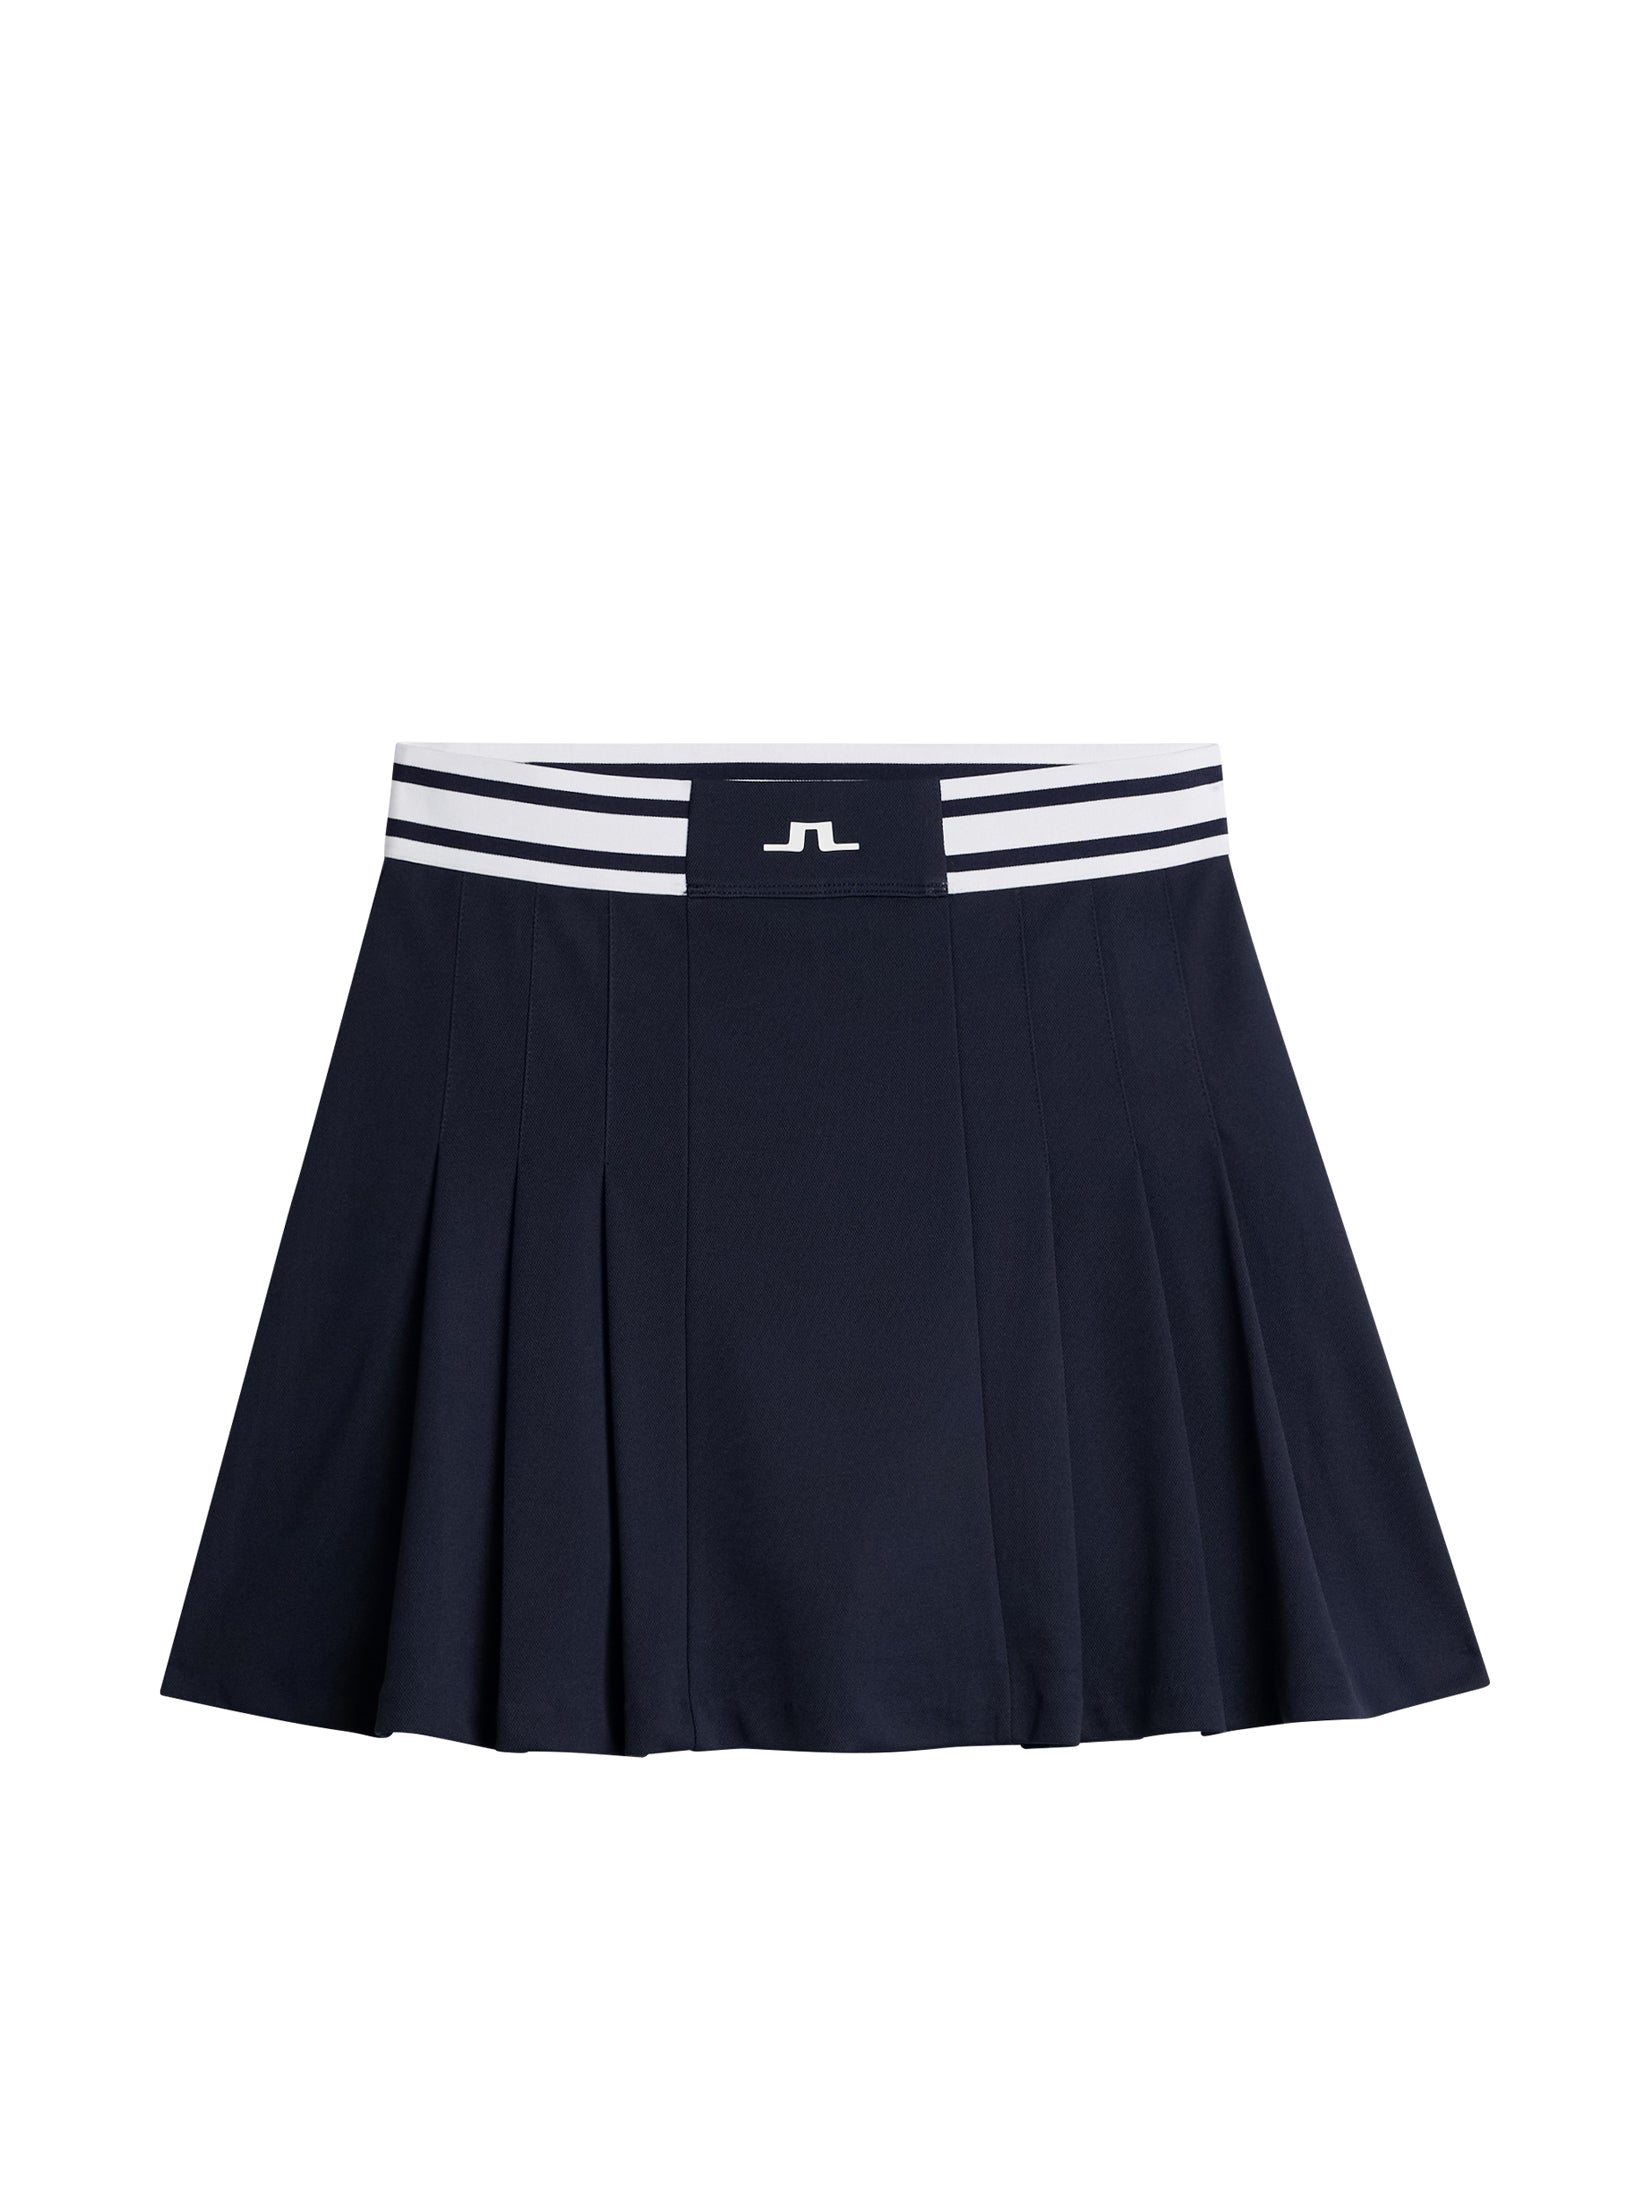 Harlow Skirt